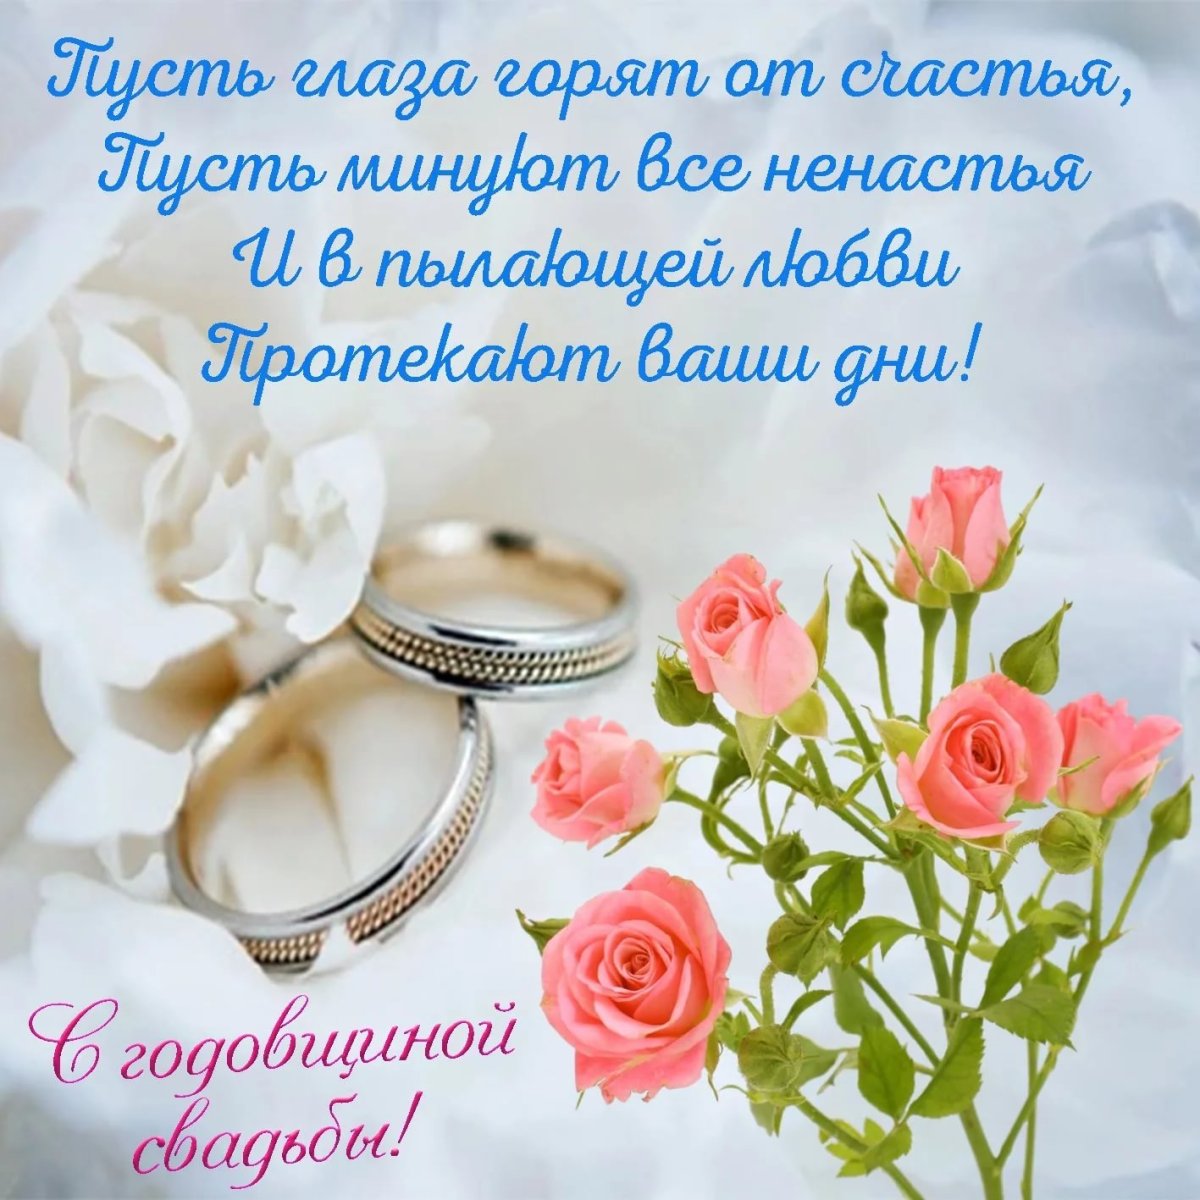 Екатерина Осадчая впервые показала фото со свадьбы и поздравила любимого с годовщиной (фото)